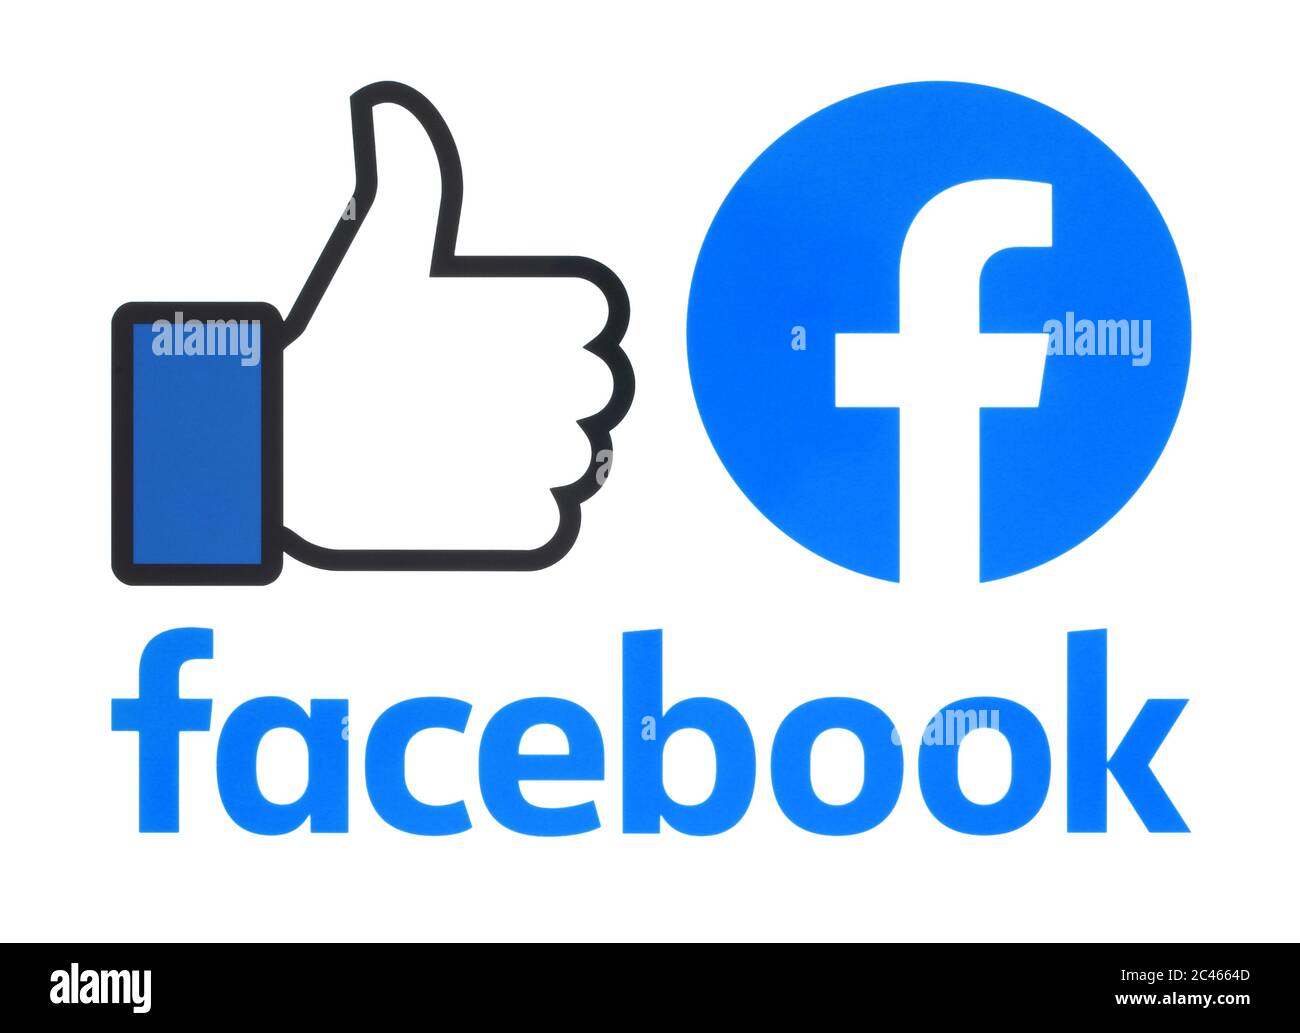 Kiev, Ukraine - 02 mai 2019 : collection d'un nouveau logo Facebook imprimé sur papier blanc. Facebook est un service de réseautage social bien connu Banque D'Images